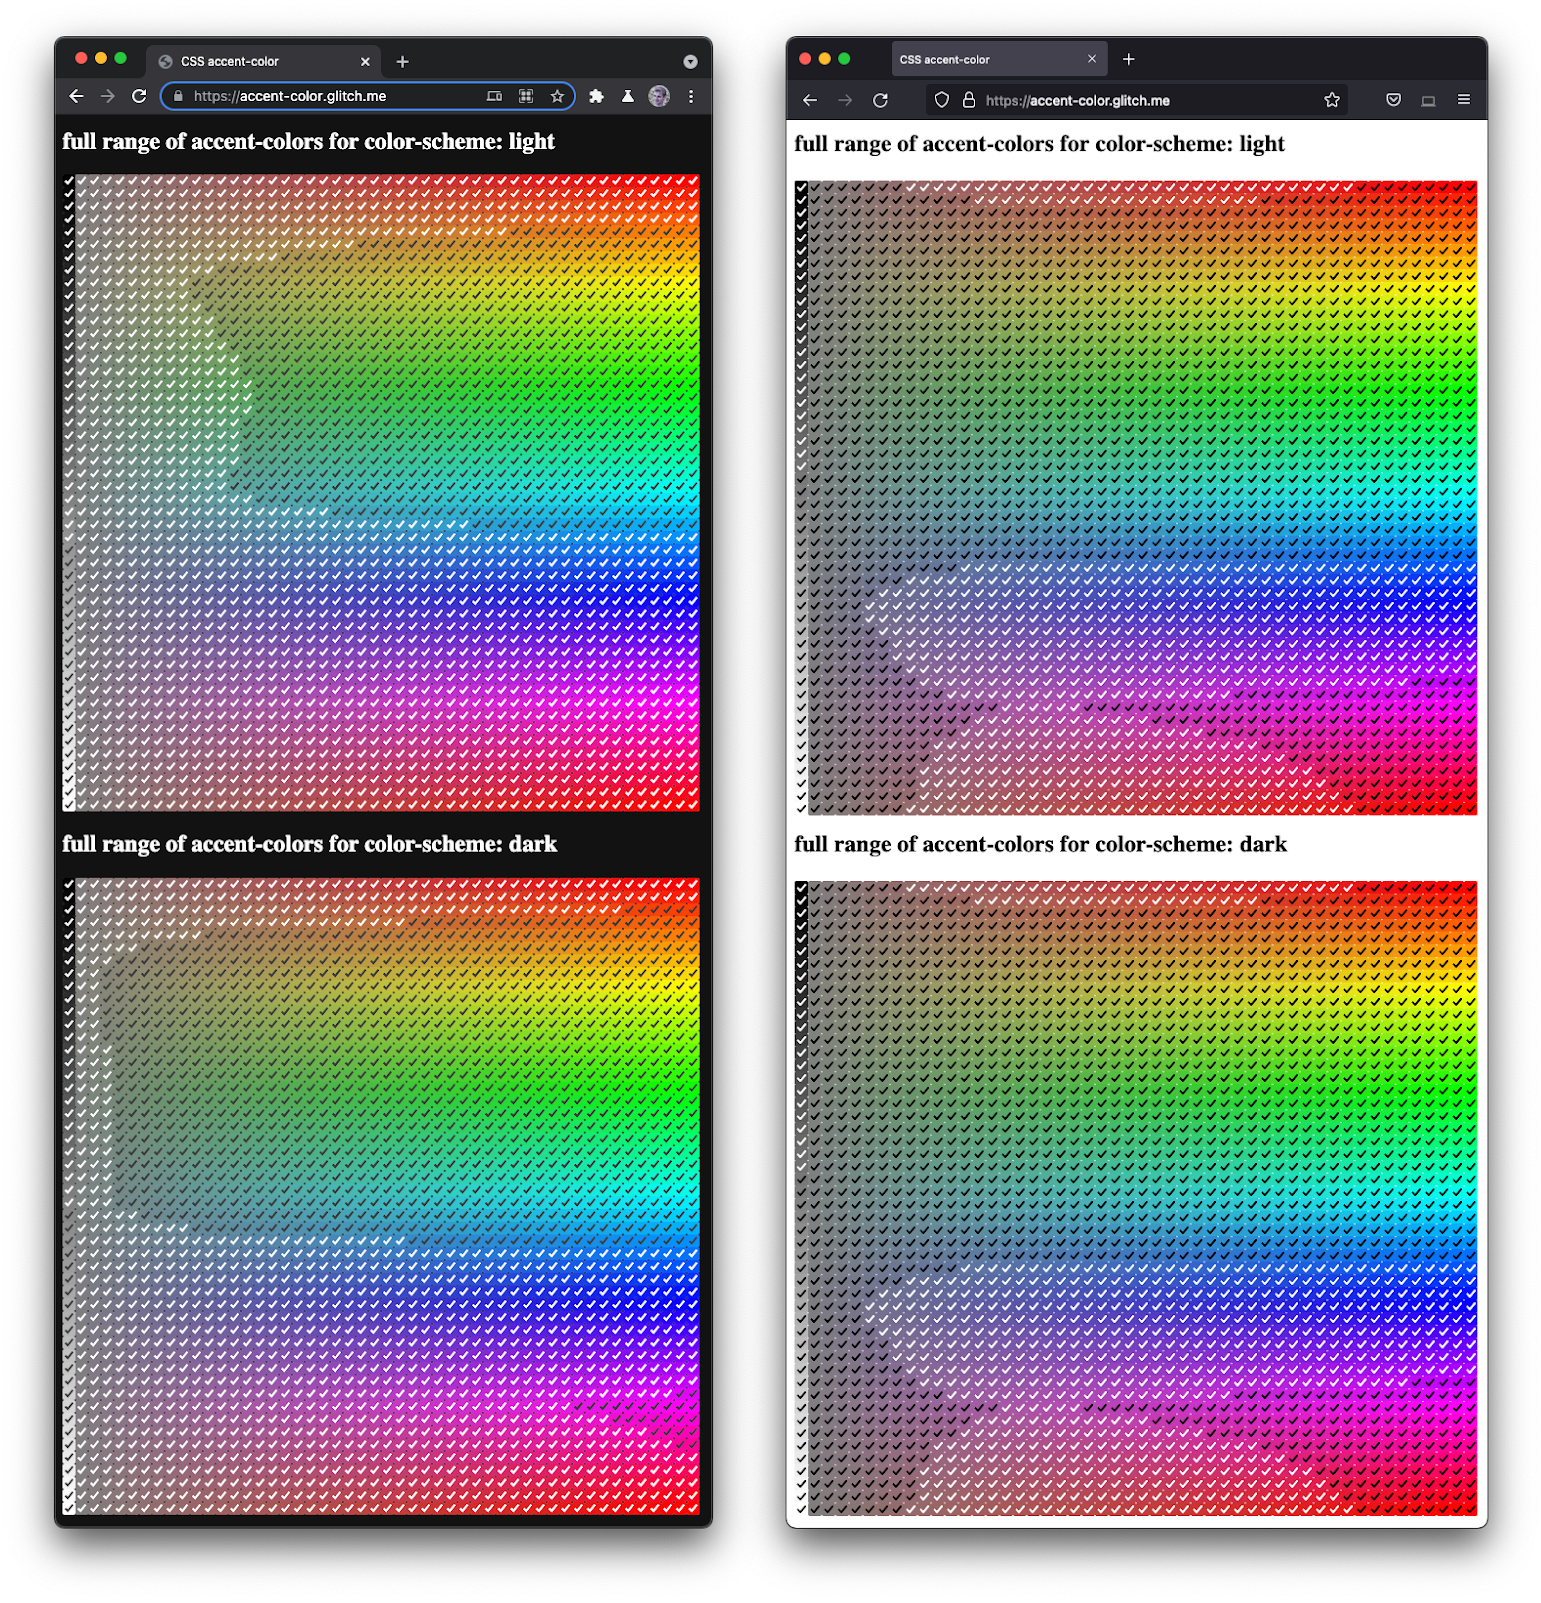 Zrzut ekranu przedstawiający obok siebie przeglądarki Firefox i Chromium z pełnym spektrum pól wyboru w różnych odcieniach i odcieniach.